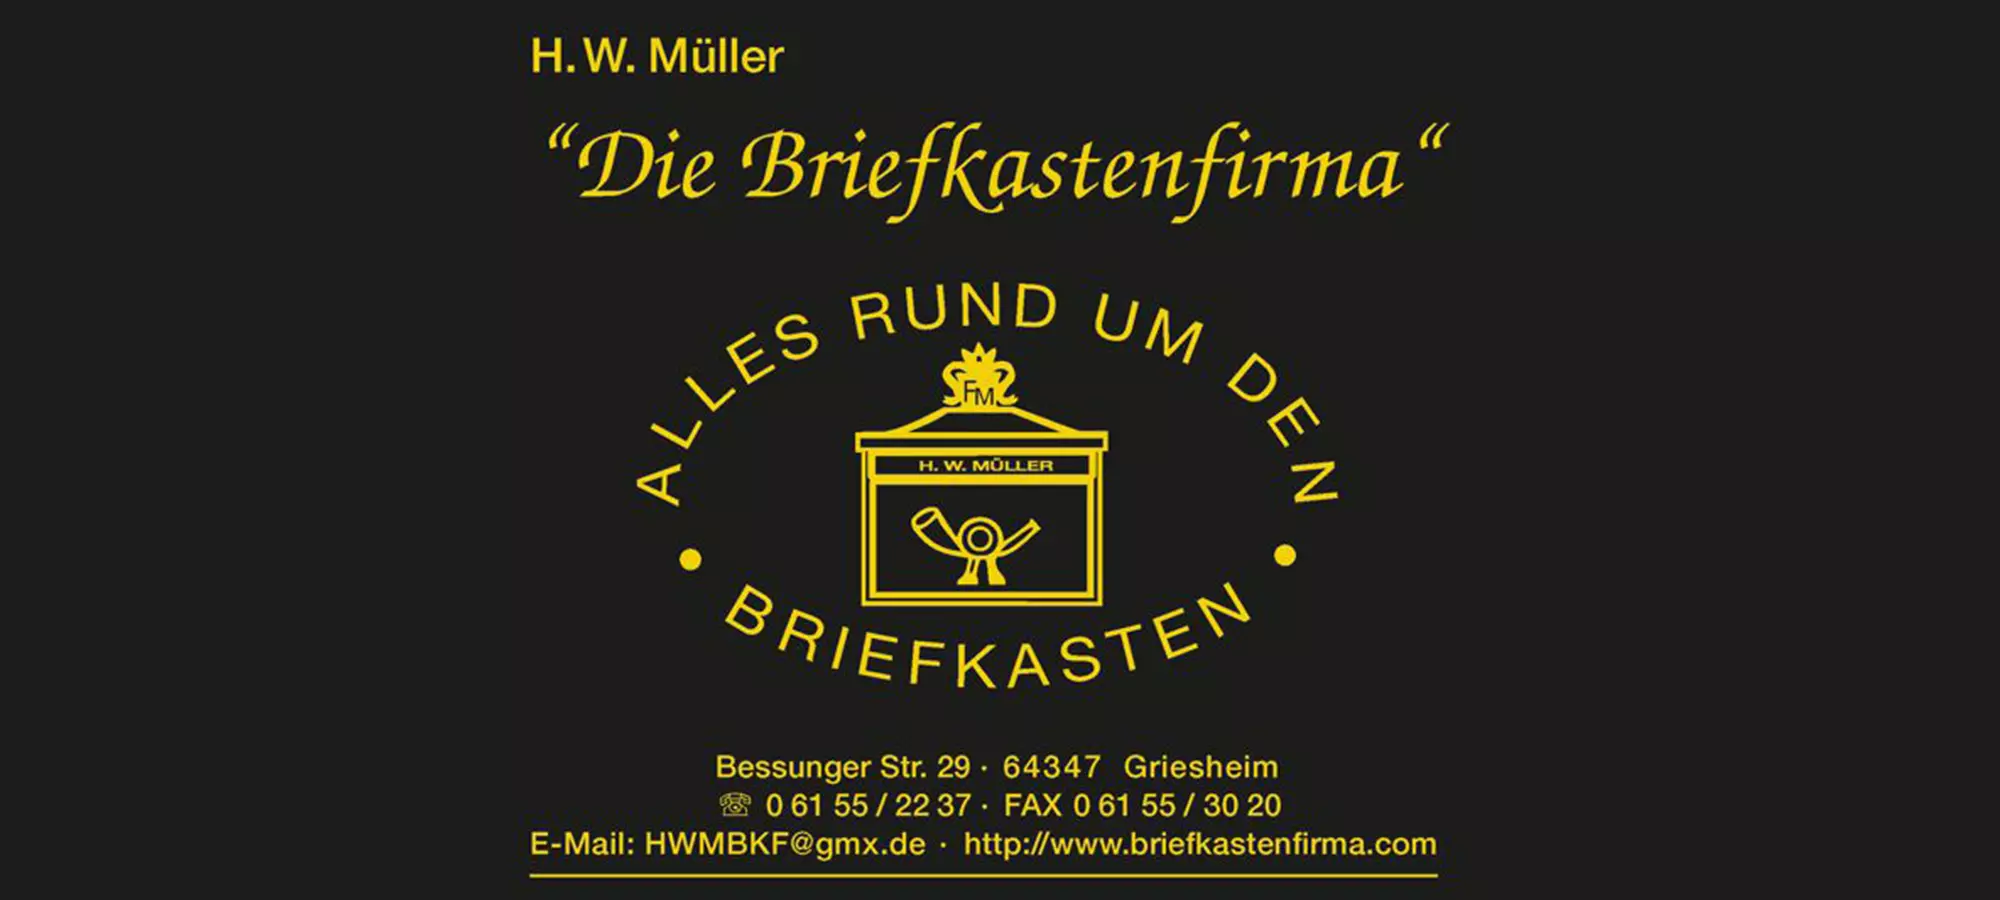 Made in Griesheim, Briefkastenfirma Müller